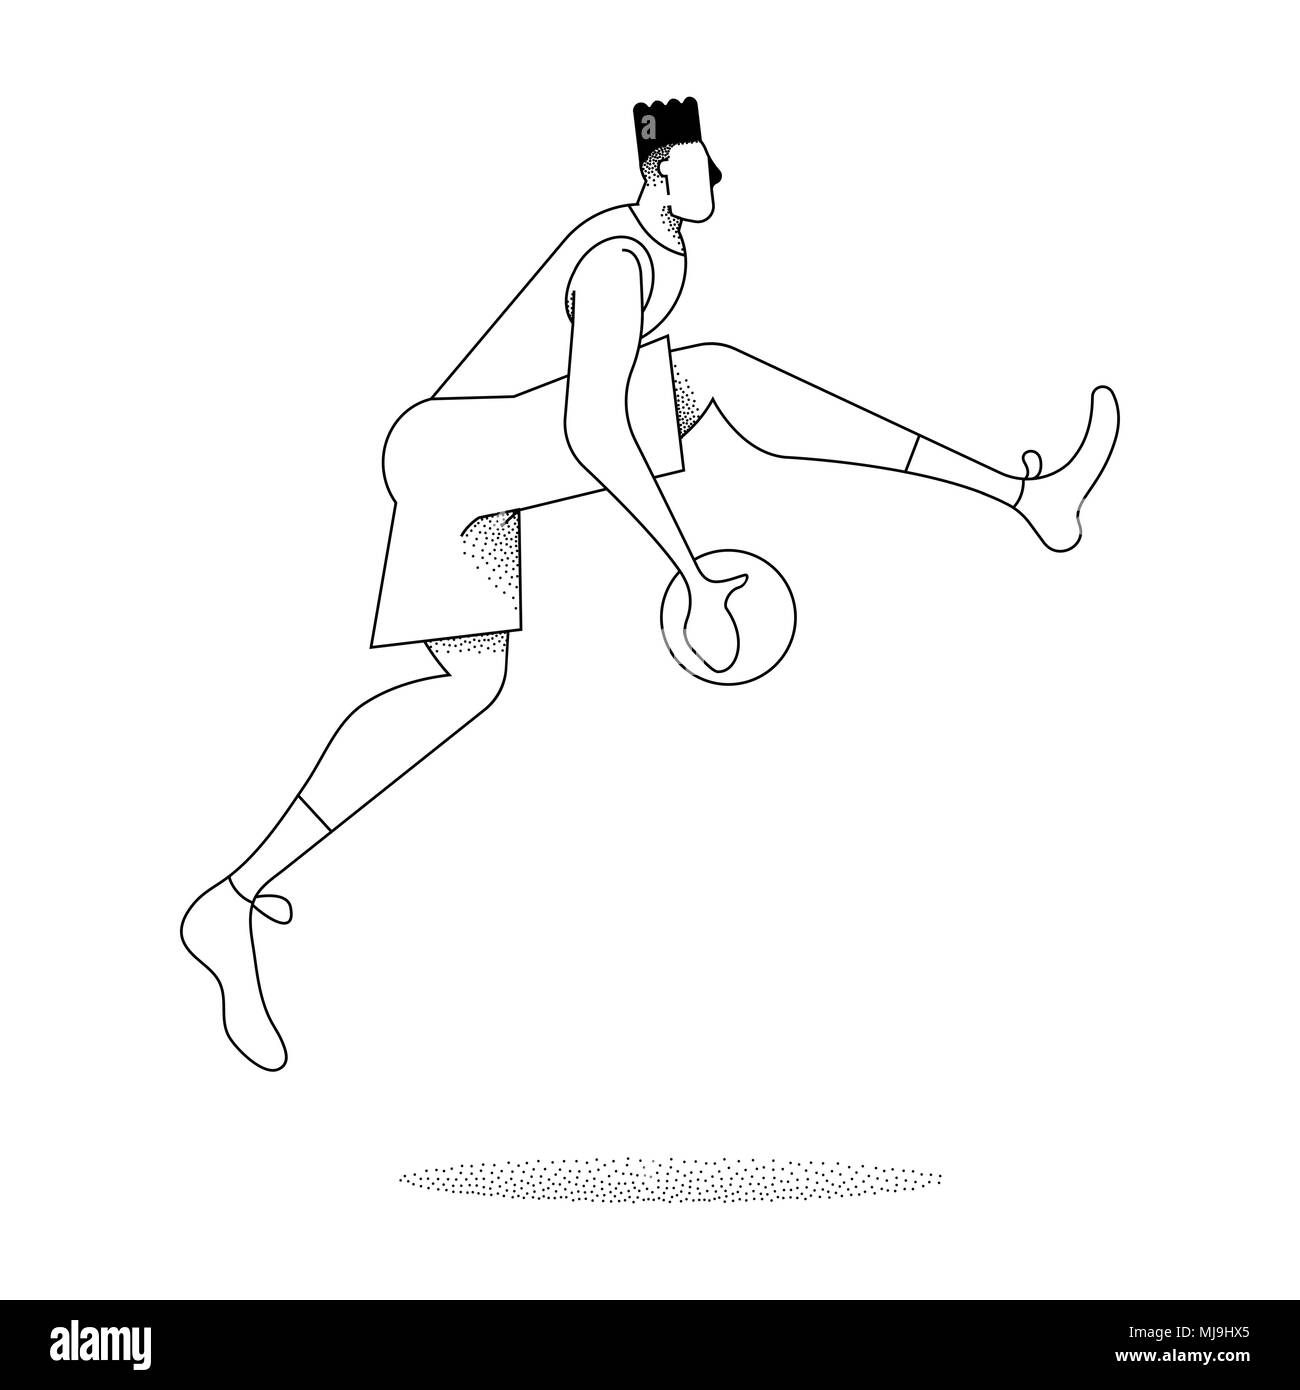 Mann spielt Basketball, modernen schwarzen und weißen Umrisse Stil. Basketball jump Pose in Aktion über isolierte Hintergrund. EPS 10 Vektor. Stock Vektor